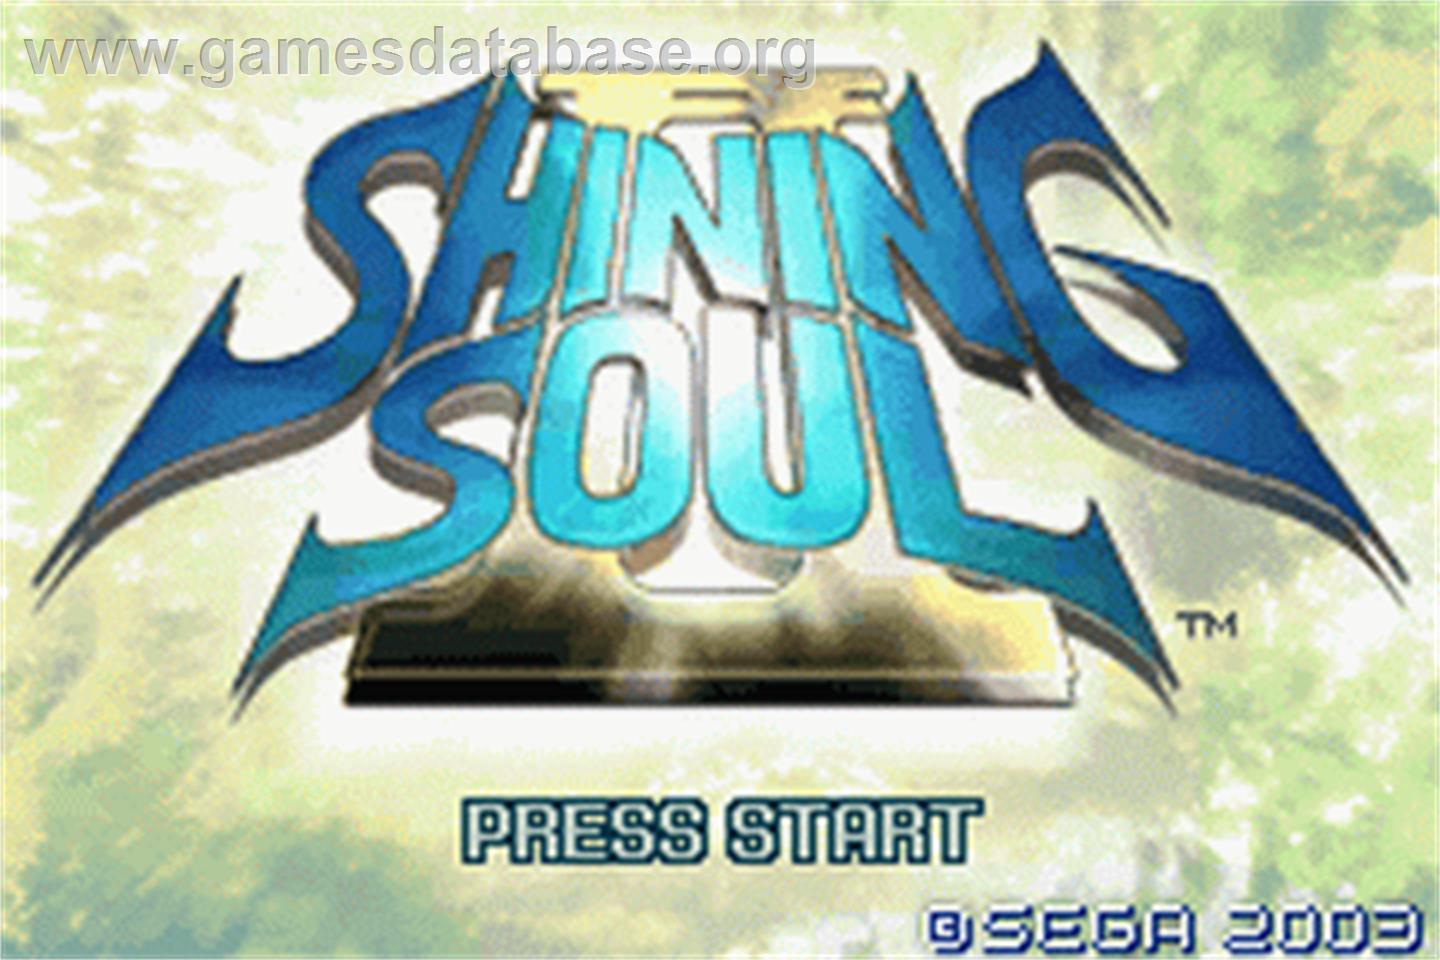 Shining Soul 2 - Nintendo Game Boy Advance - Artwork - Title Screen